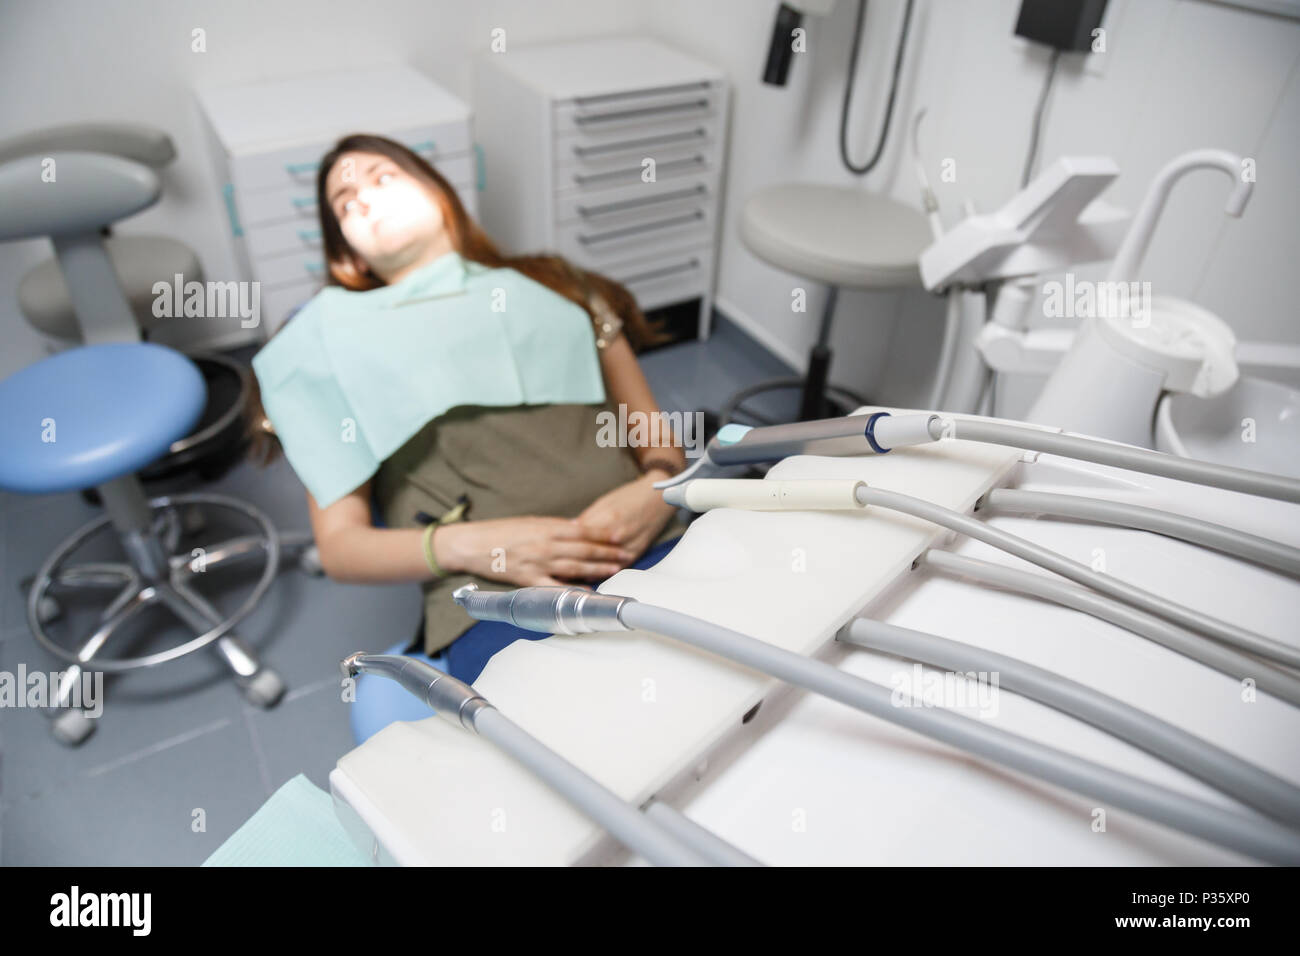 Junge weibliche im Behandlungsstuhl sitzen in Klinik Zimmer mit Anlagen in Soft Focus. Stockfoto